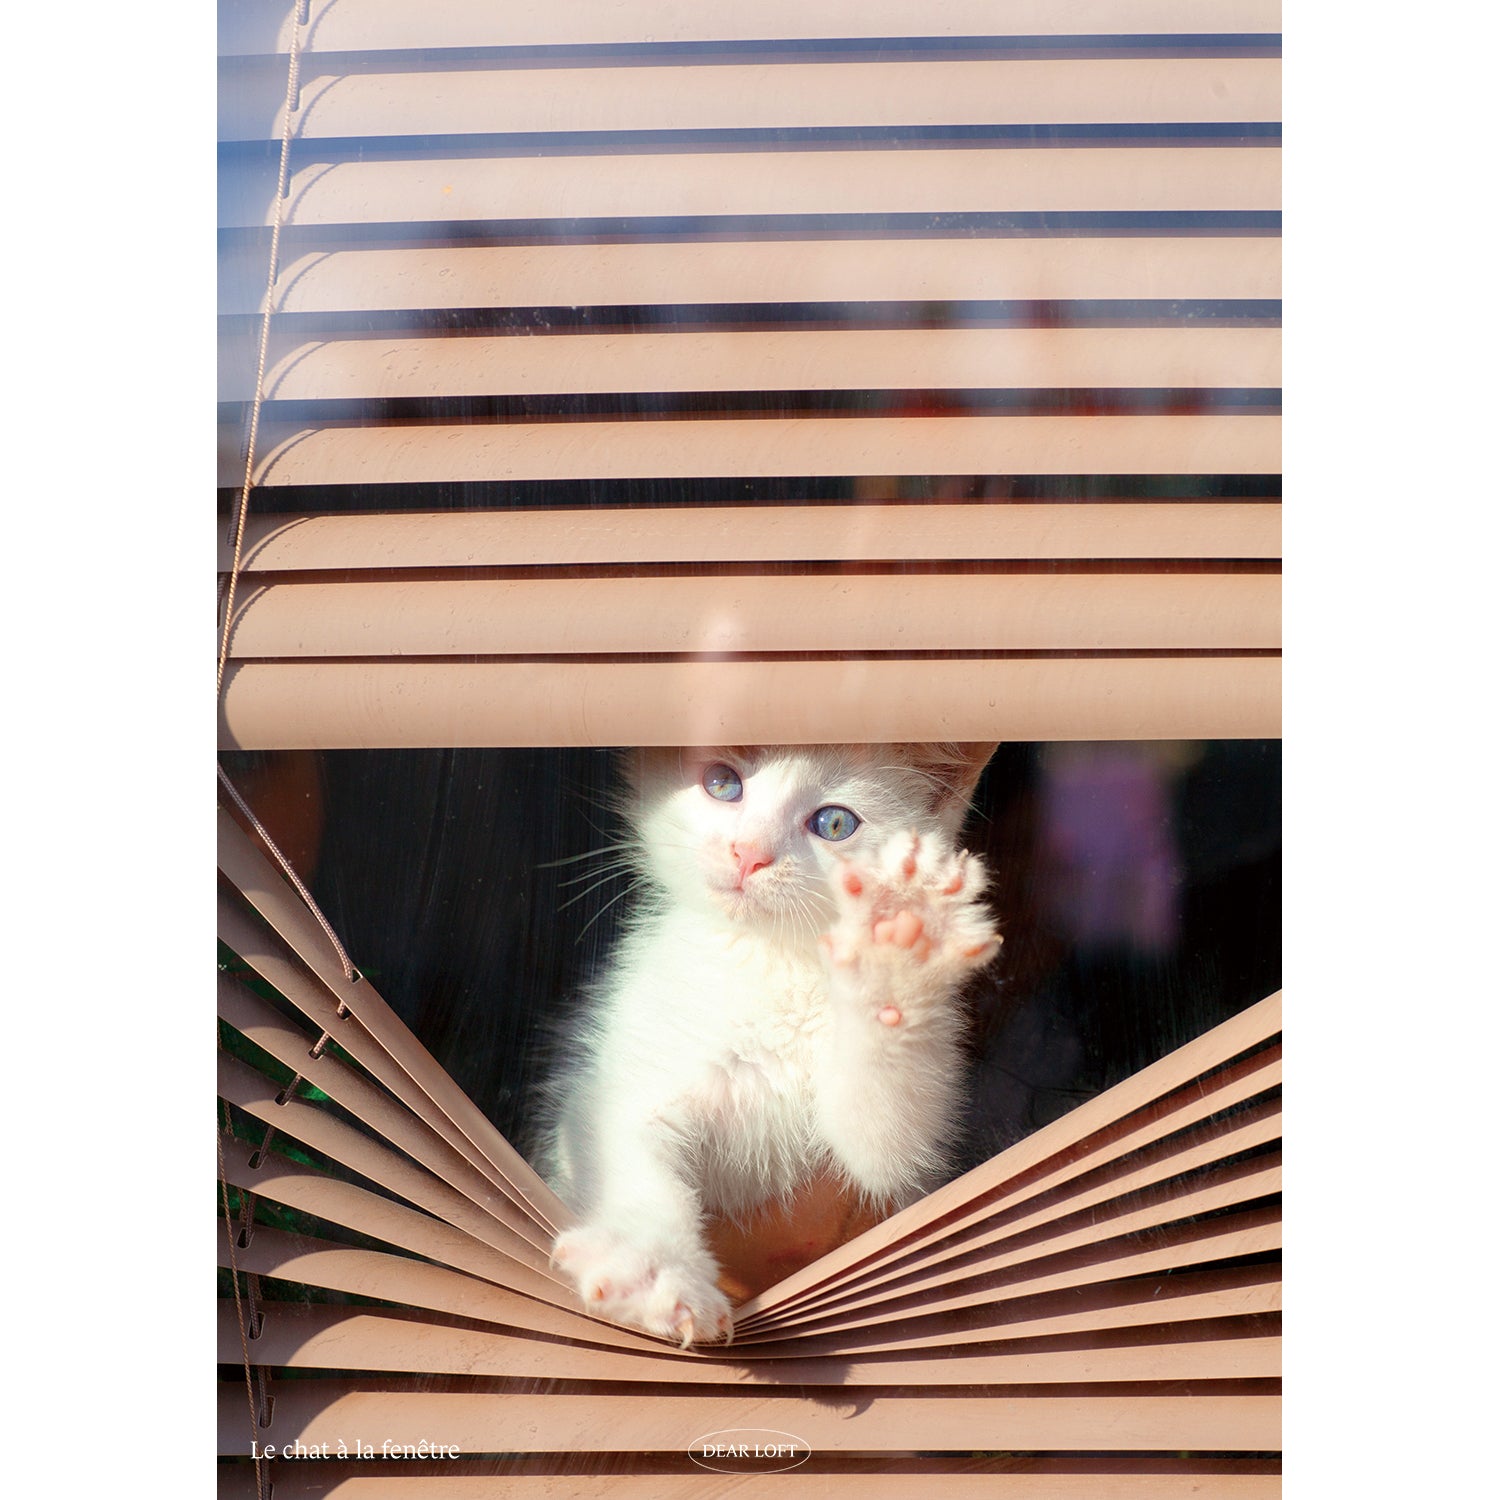 Le chat à la fenêtre - Paper Poster (A3)